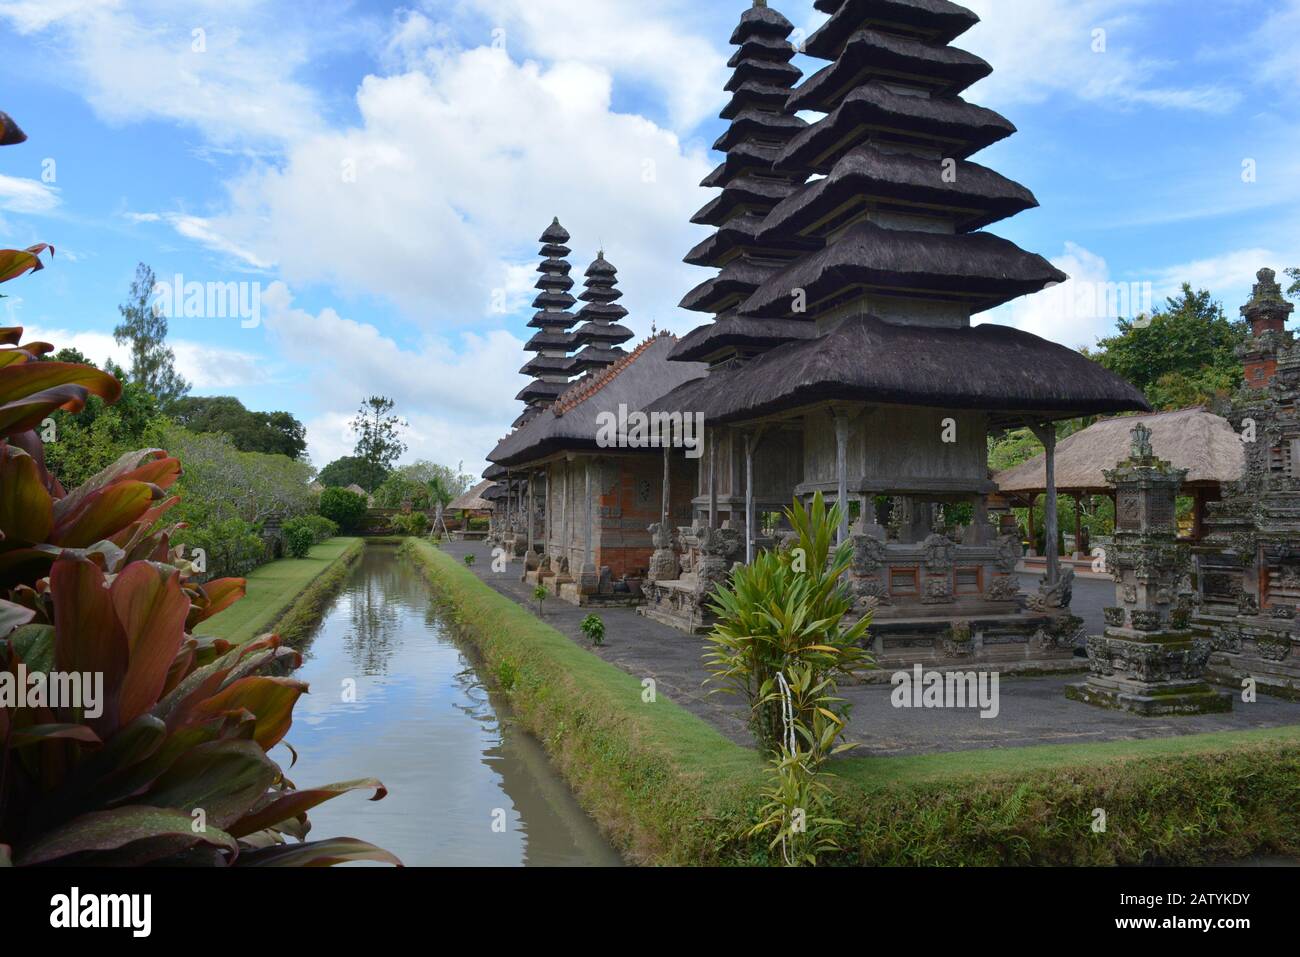 Taman Ayun Temple in Bali Indonesia Stock Photo